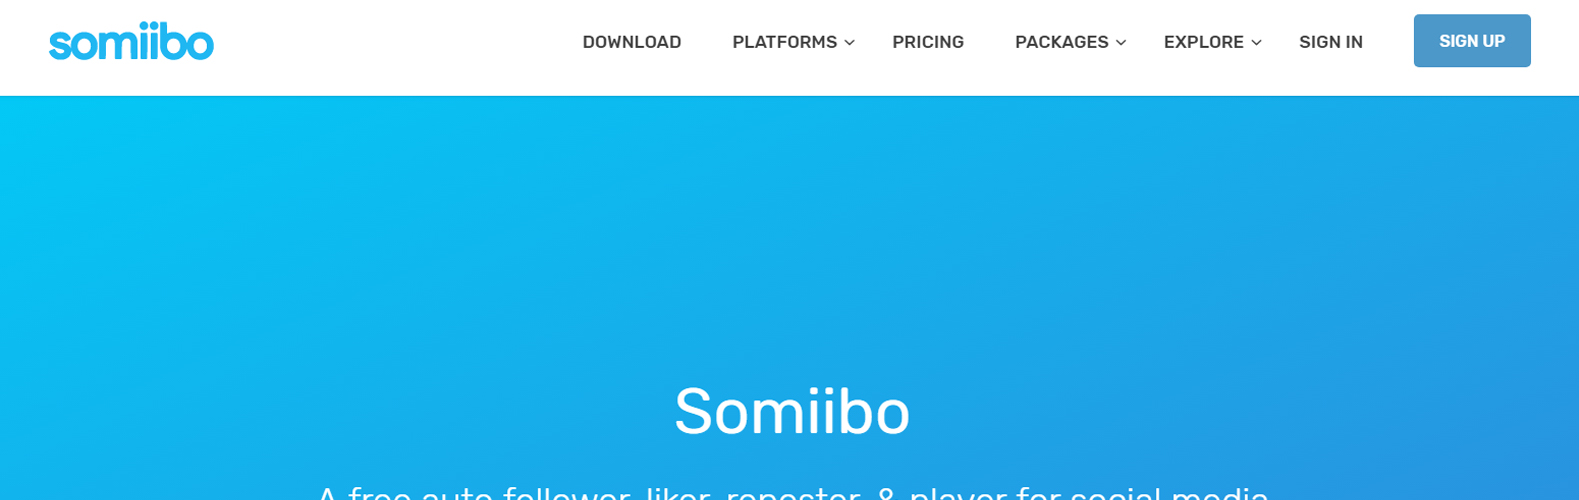 Somiibo Review